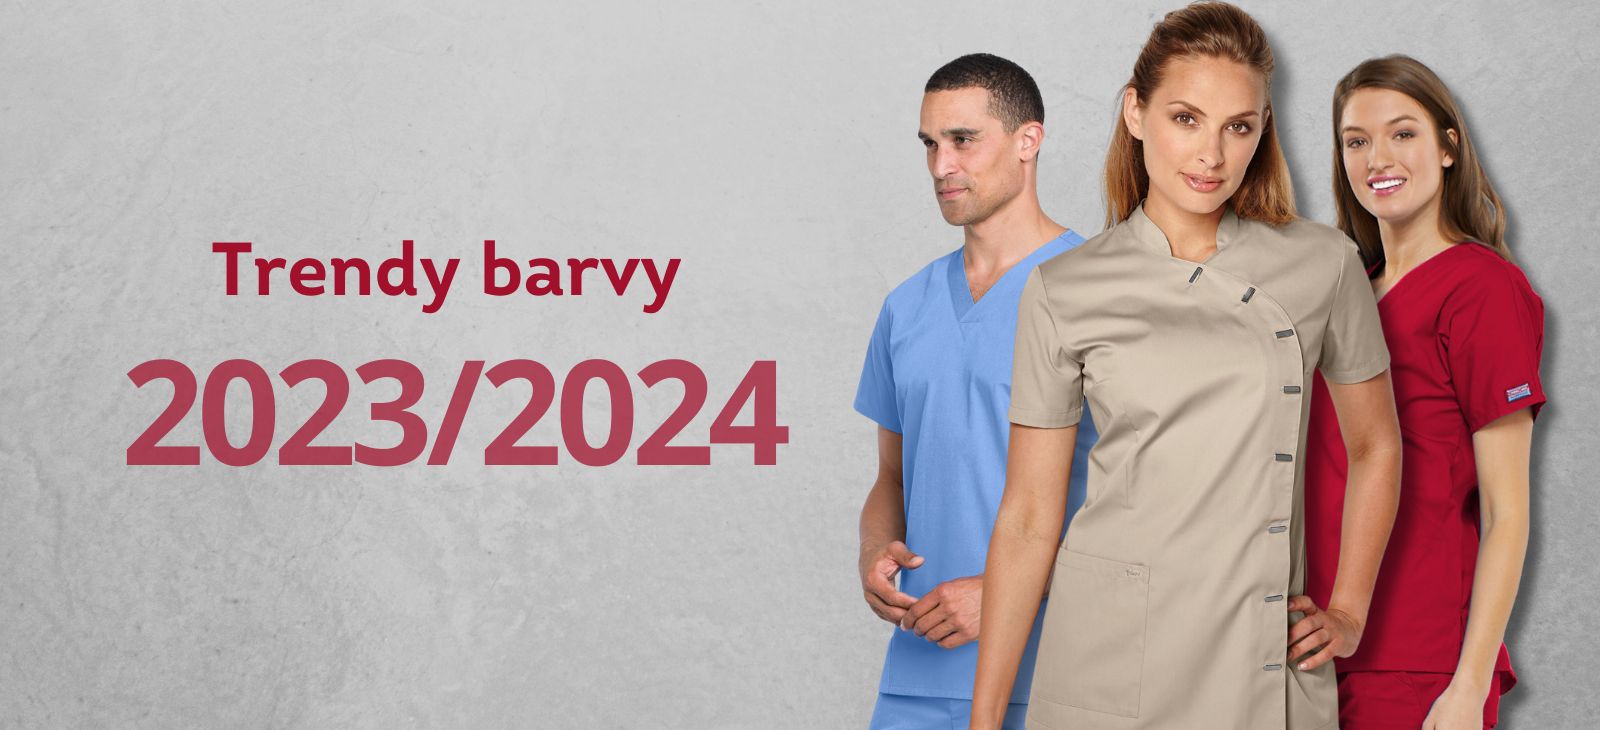 Trendy barvy 2023/2024 Medical Uniforms